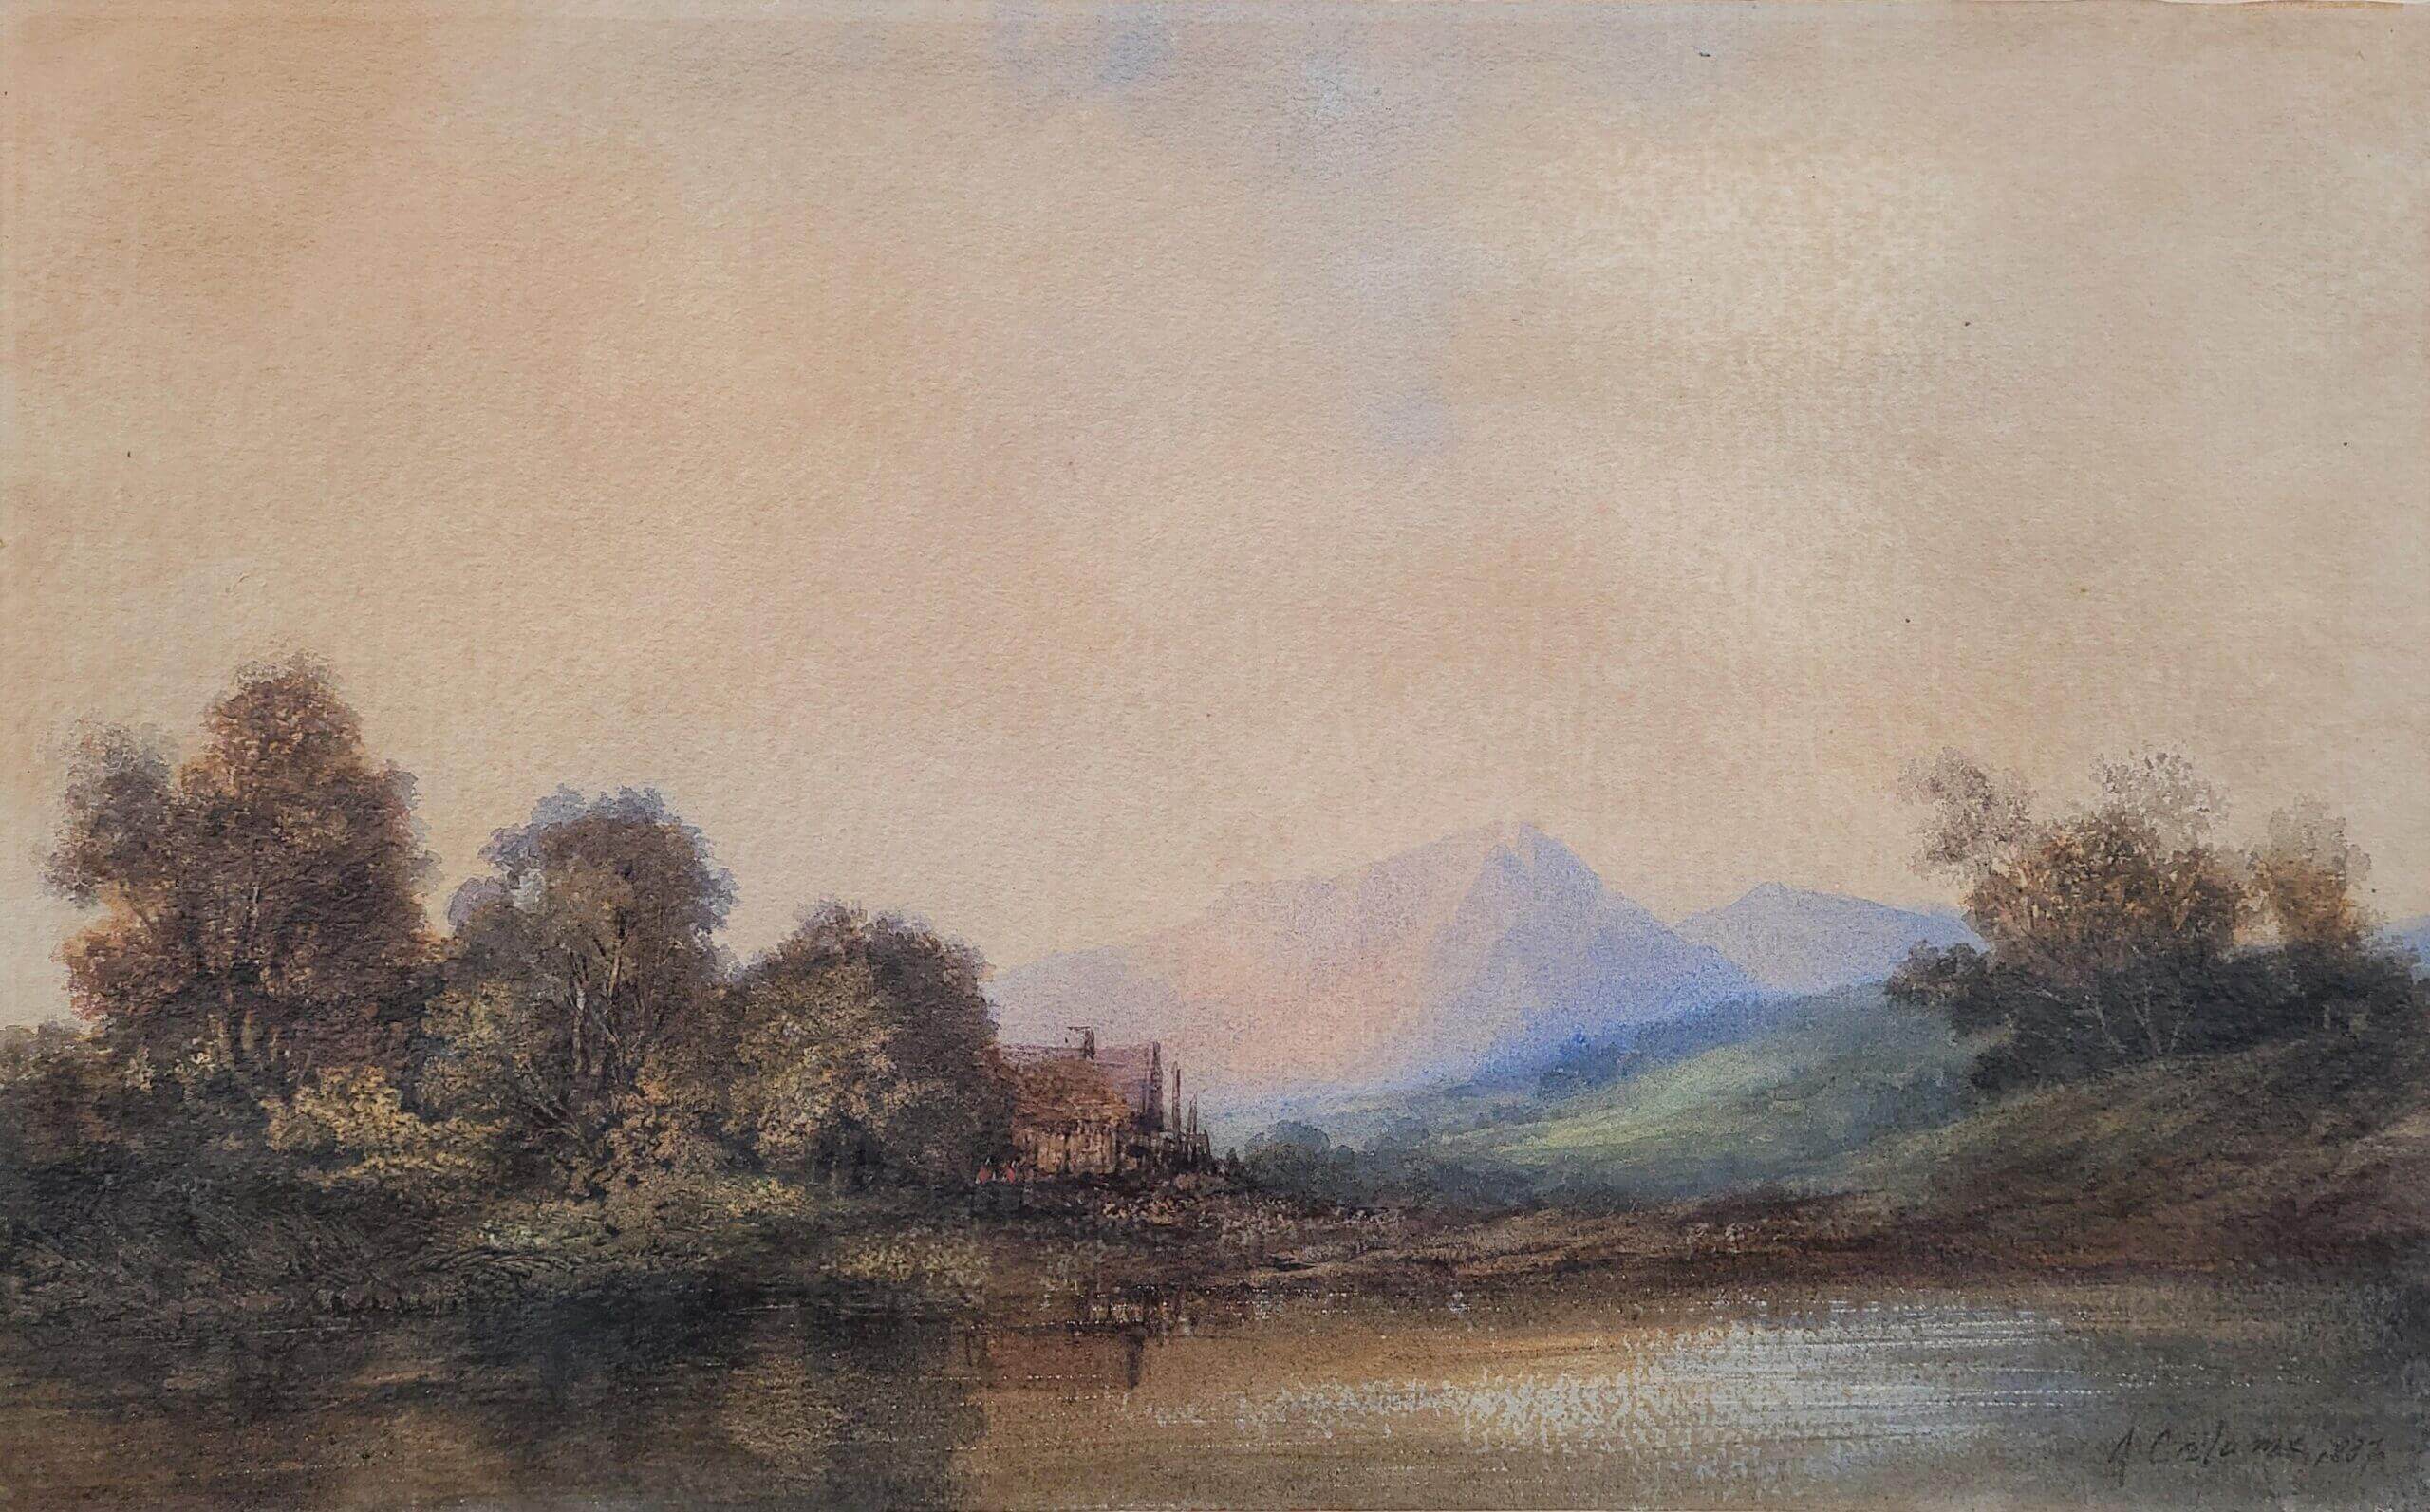 Aquarell von Alexandre Calame mit Flusslandschaft und Bergen im Hintergrund